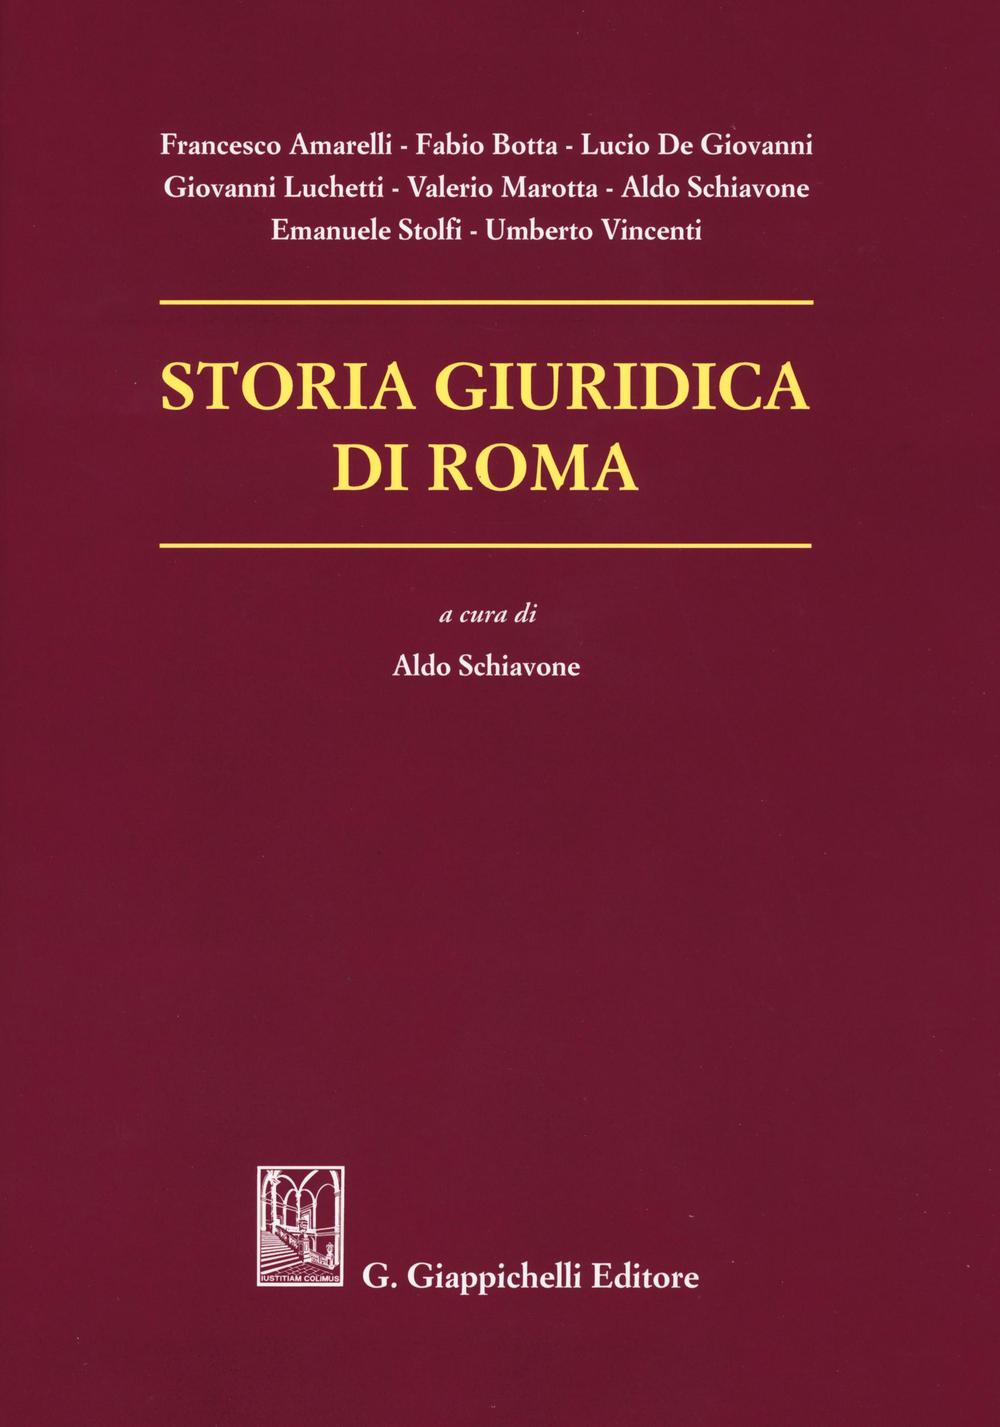 Storia giuridica di Roma